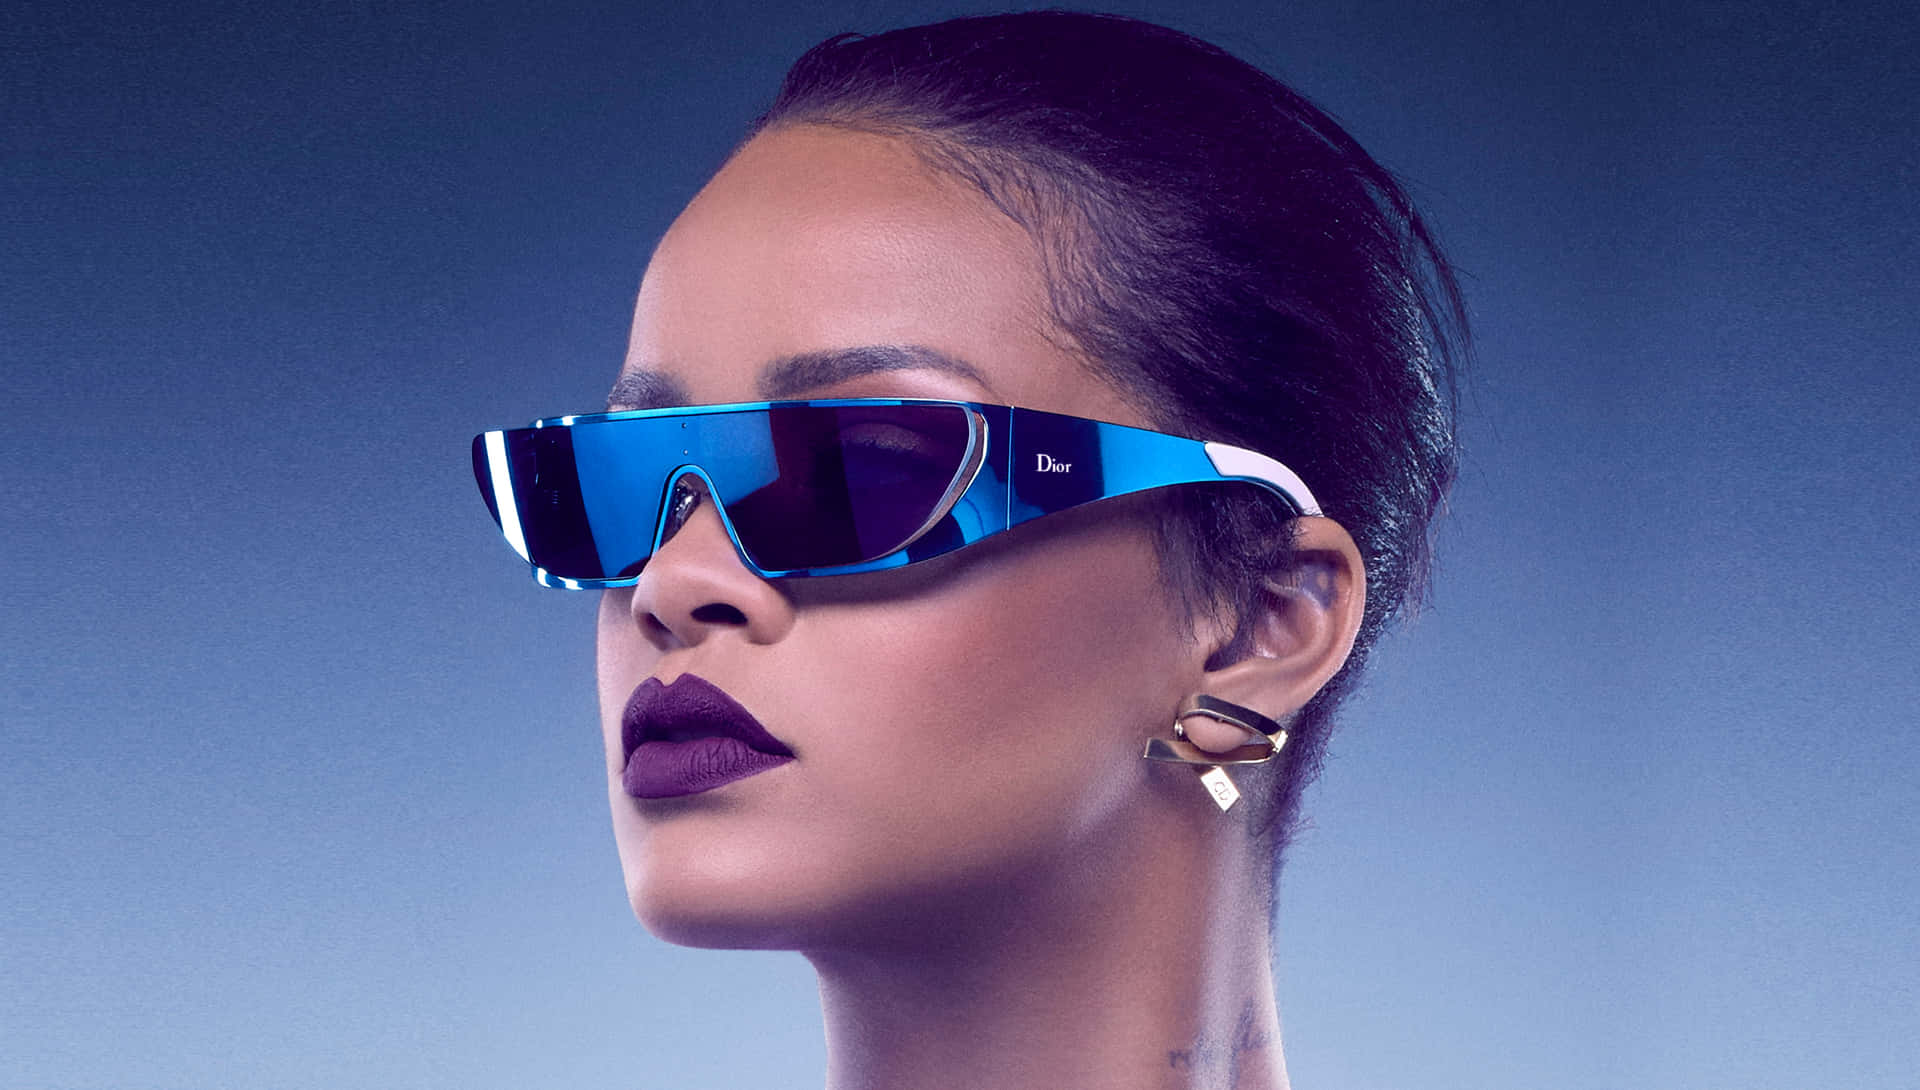 Rihannaimpondo Seu Estilo Individual E Carisma Fashion